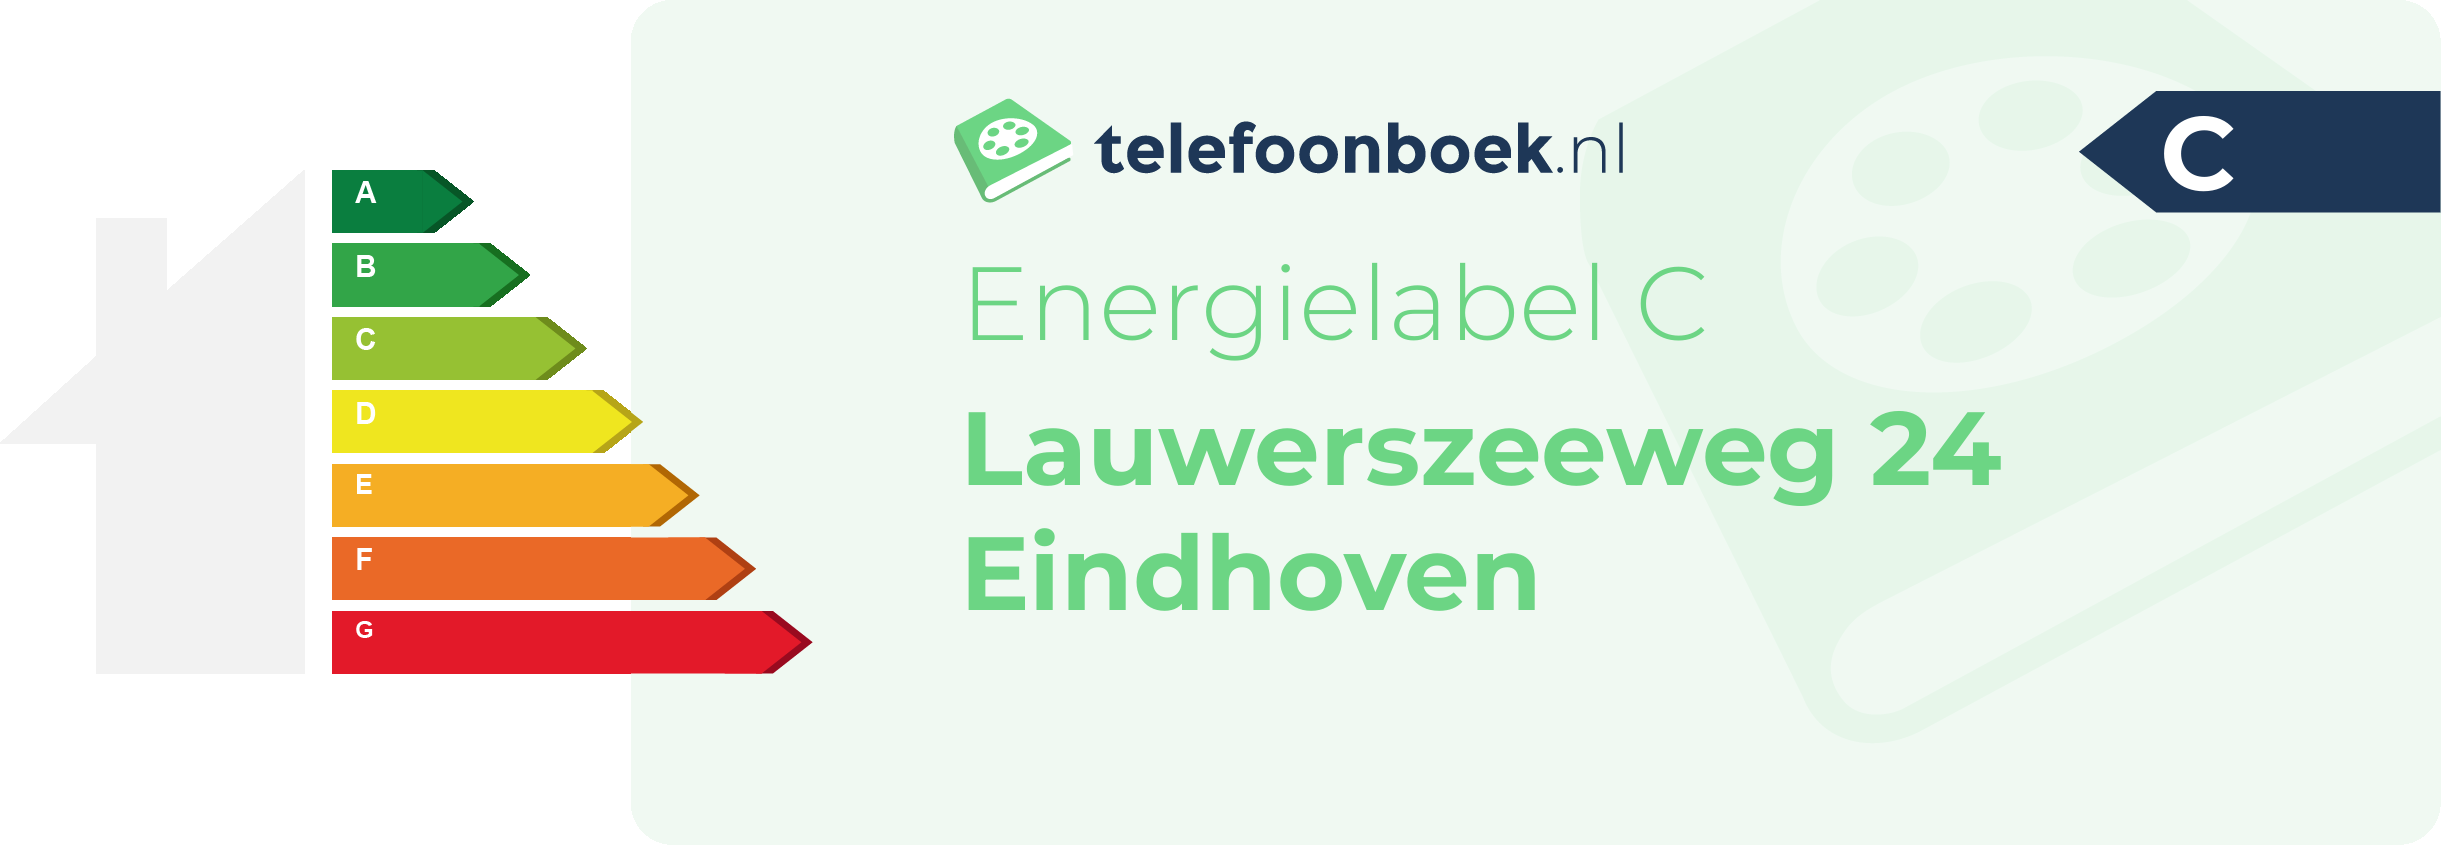 Energielabel Lauwerszeeweg 24 Eindhoven